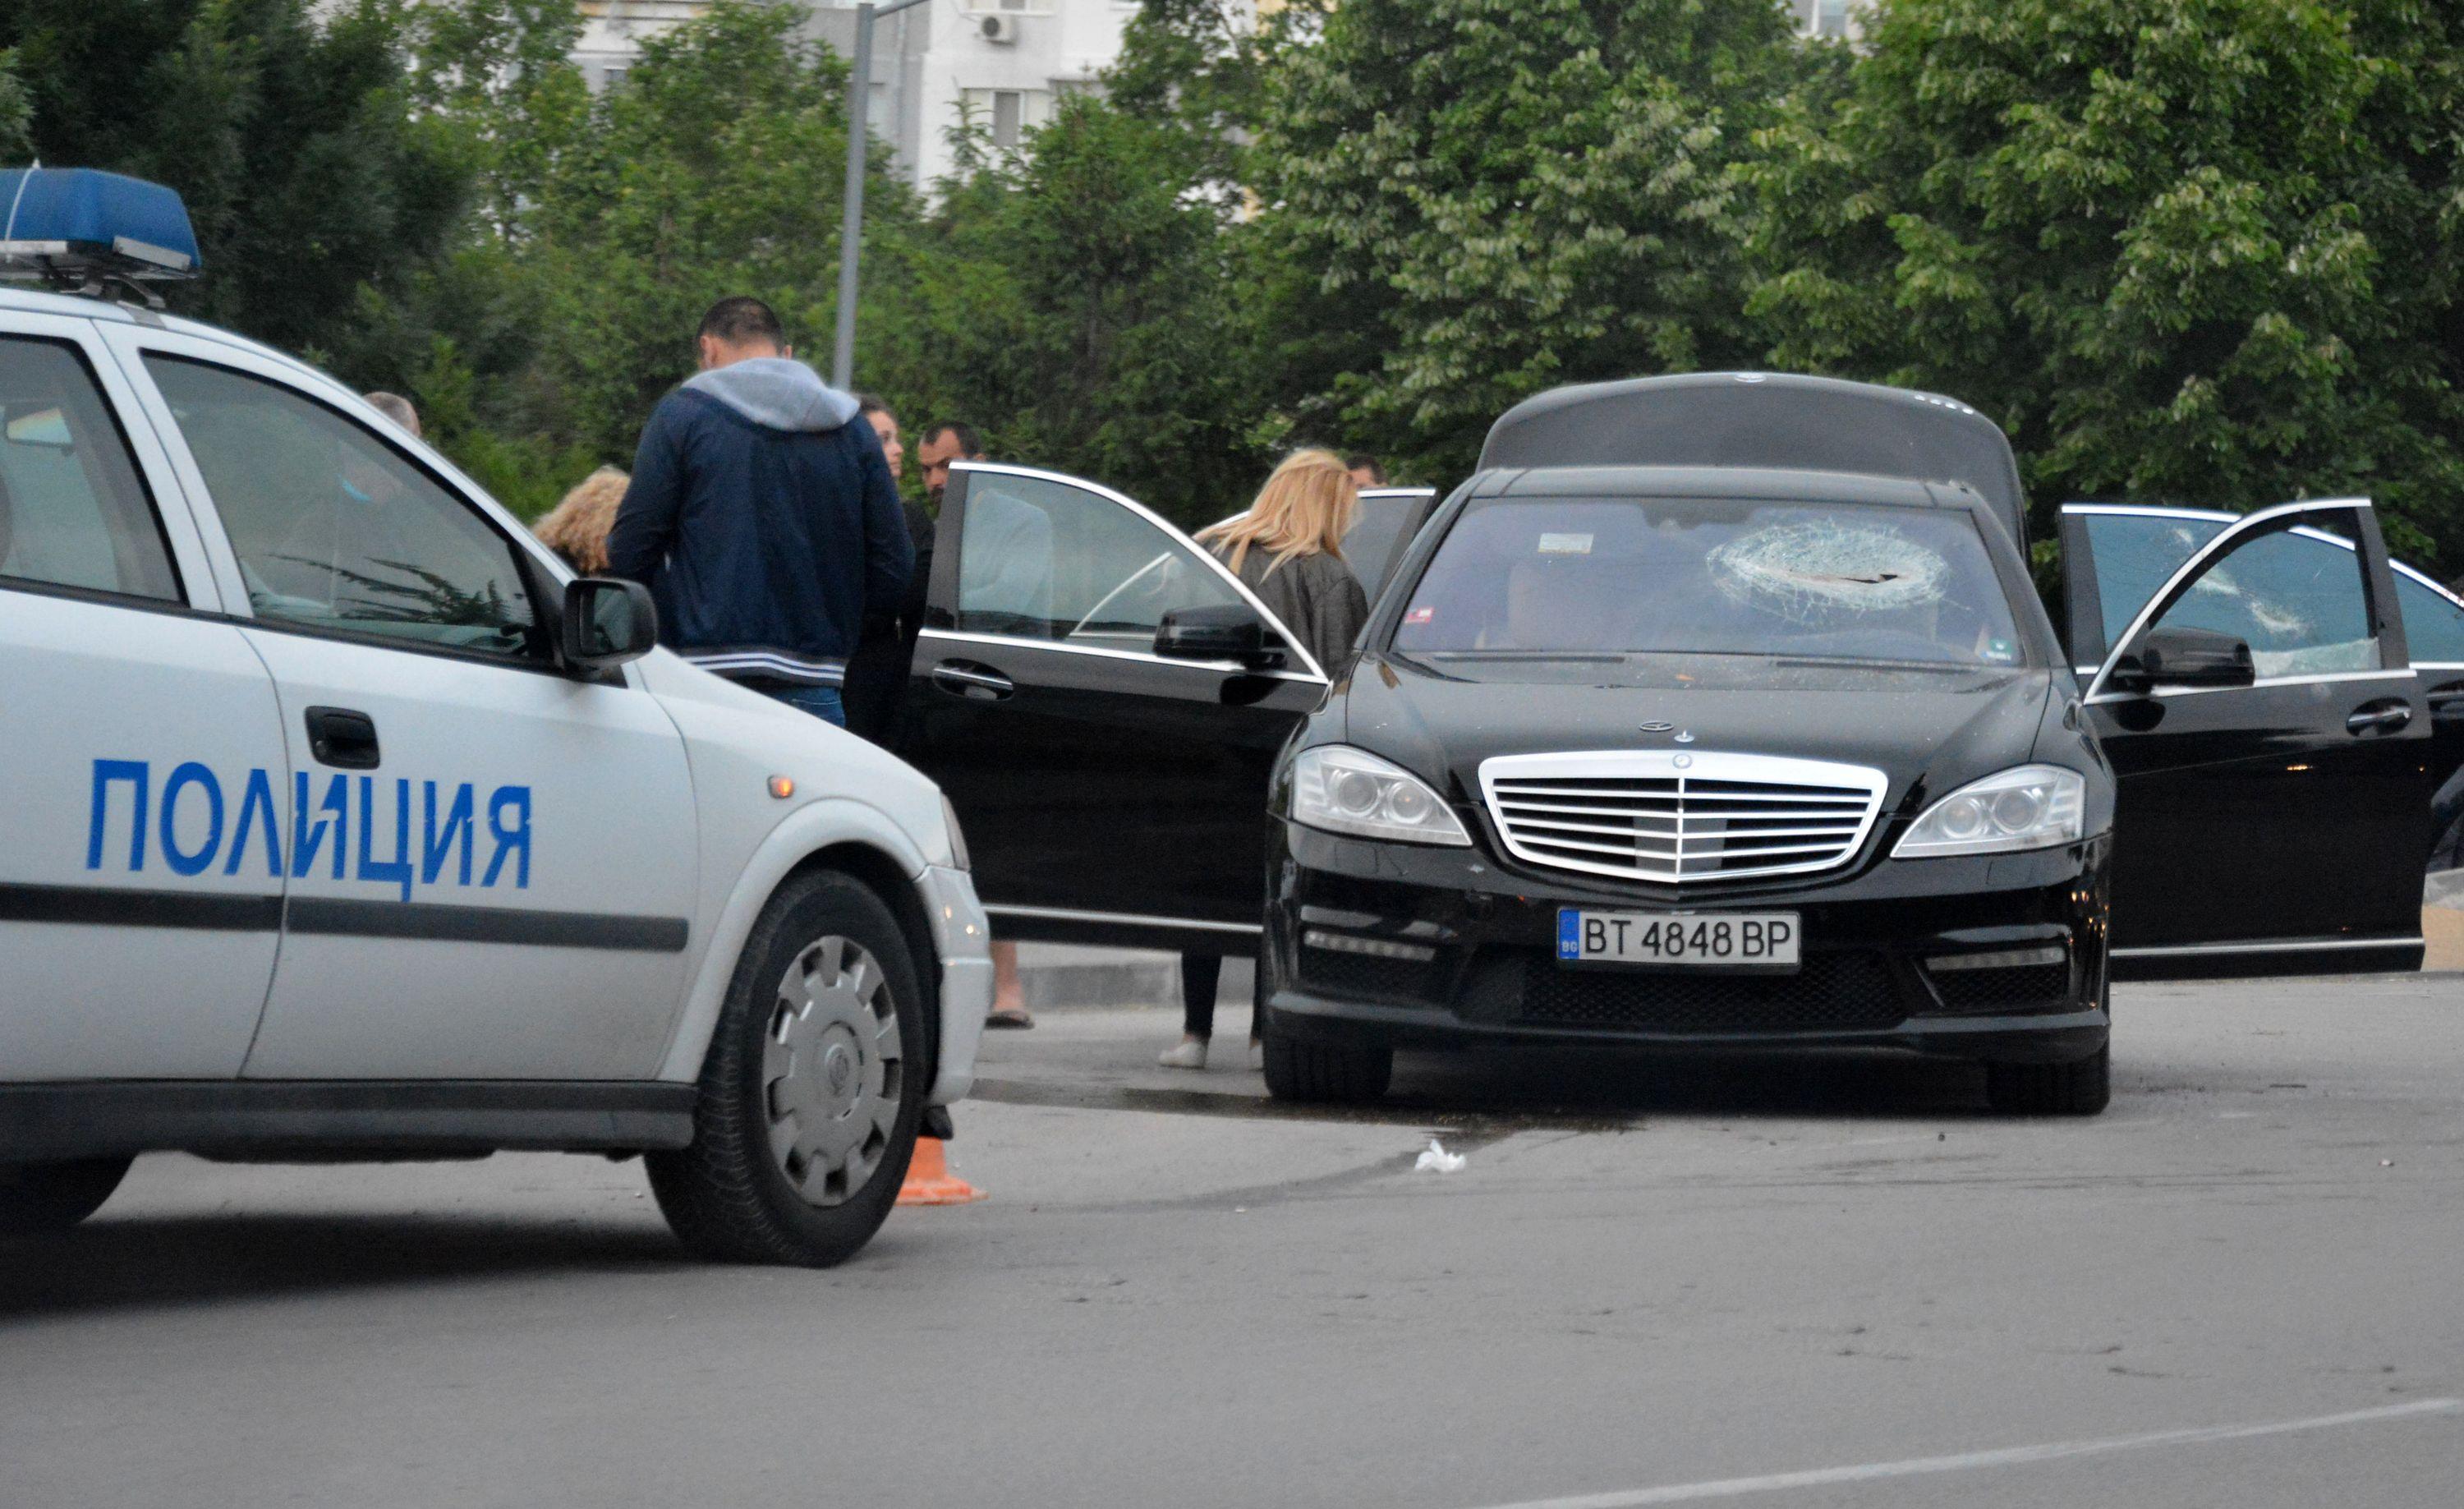 Брутални сцени във Варна, биячи с колове налетяха на пътниците в лимузина (СНИМКИ)